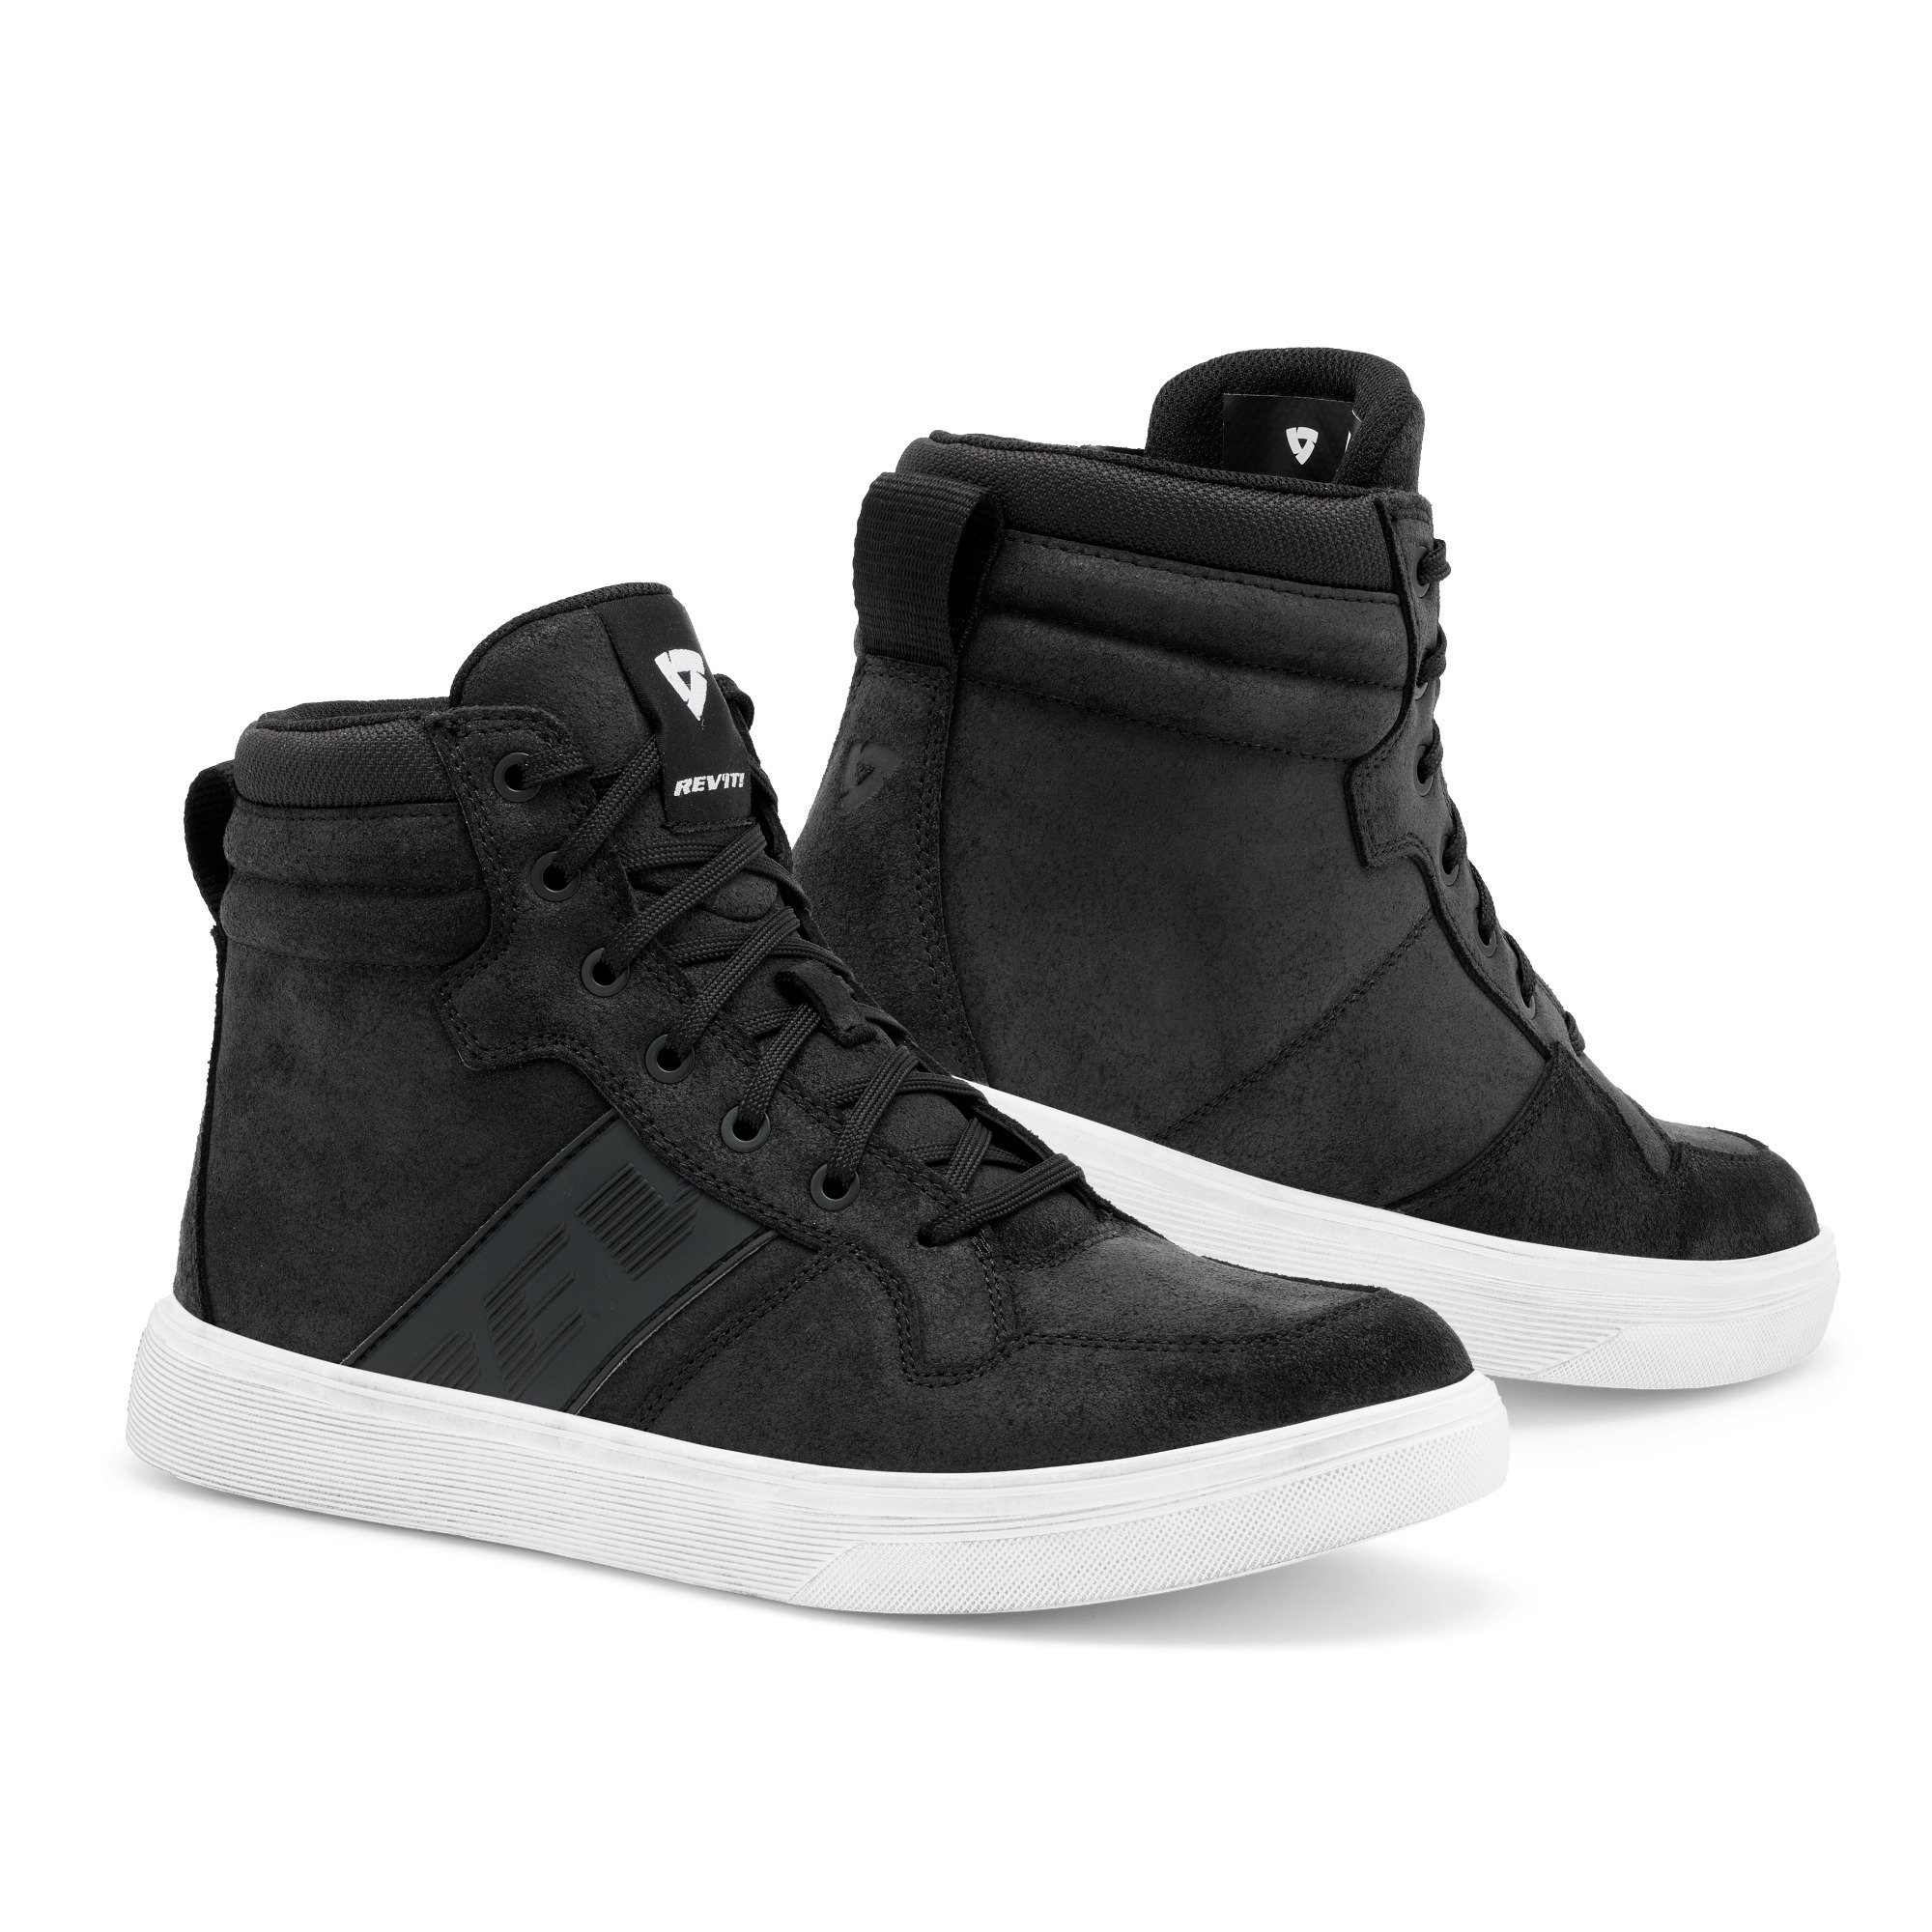 Image of REV'IT! Kick Shoes Black White Size 39 ID 8700001357470